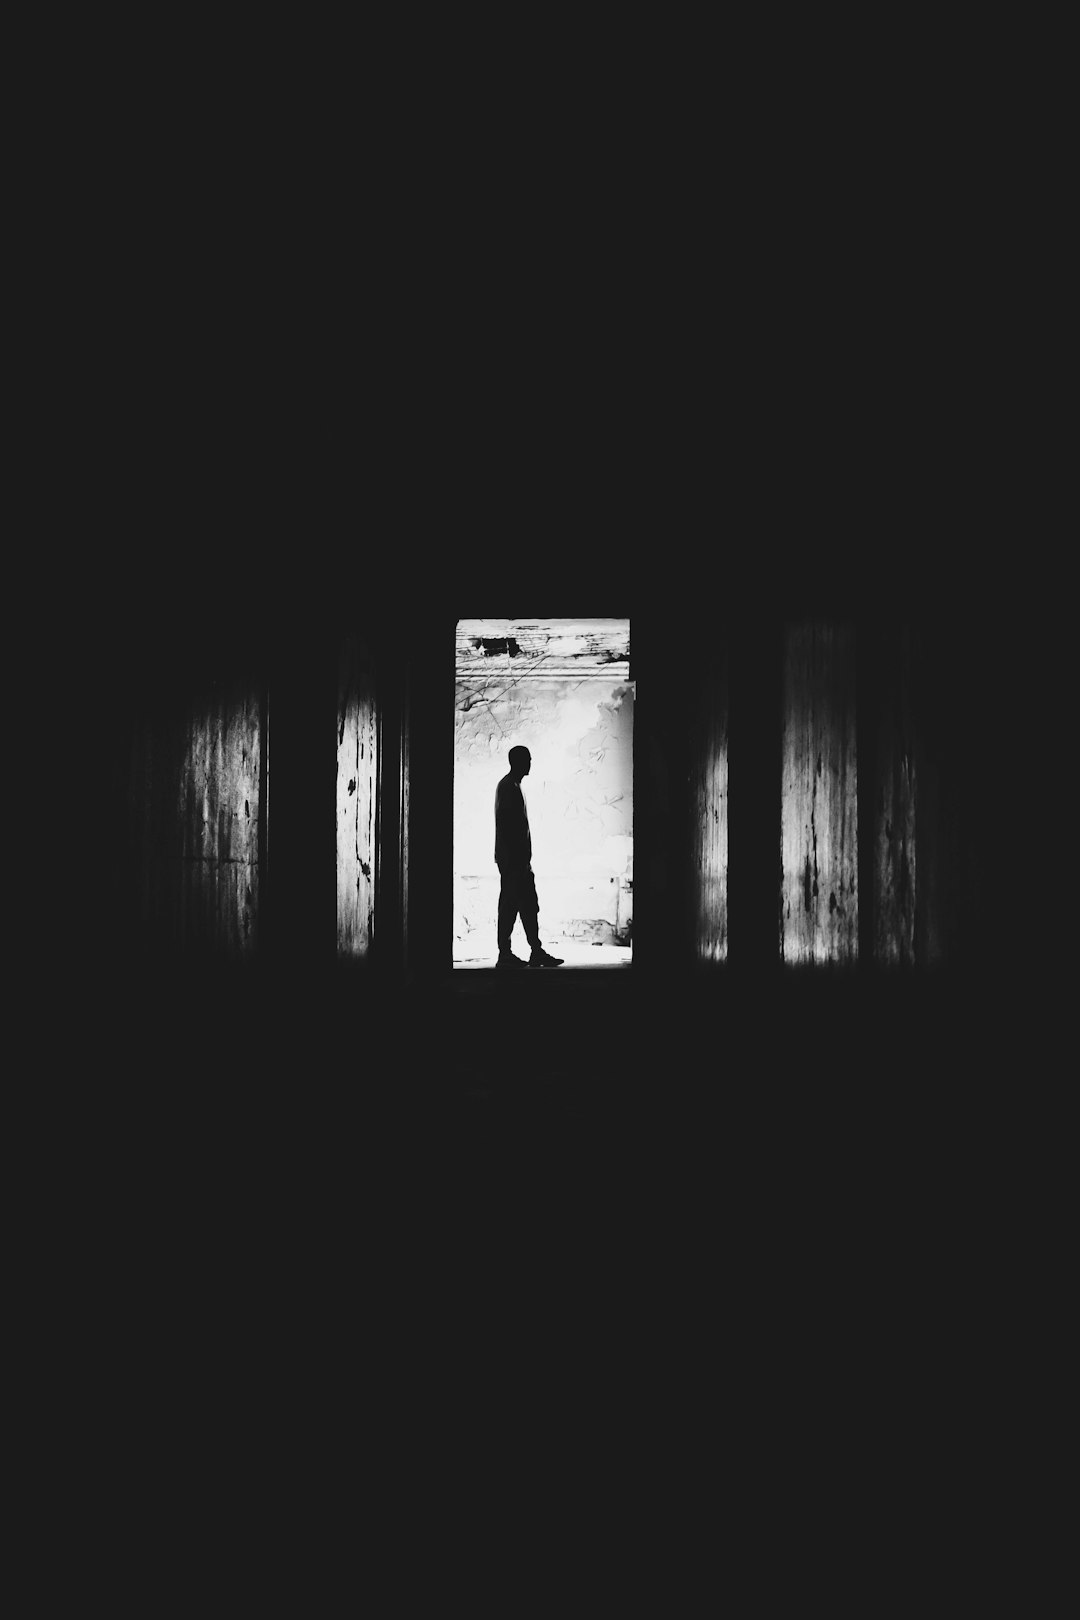 silhouette of man in dark room